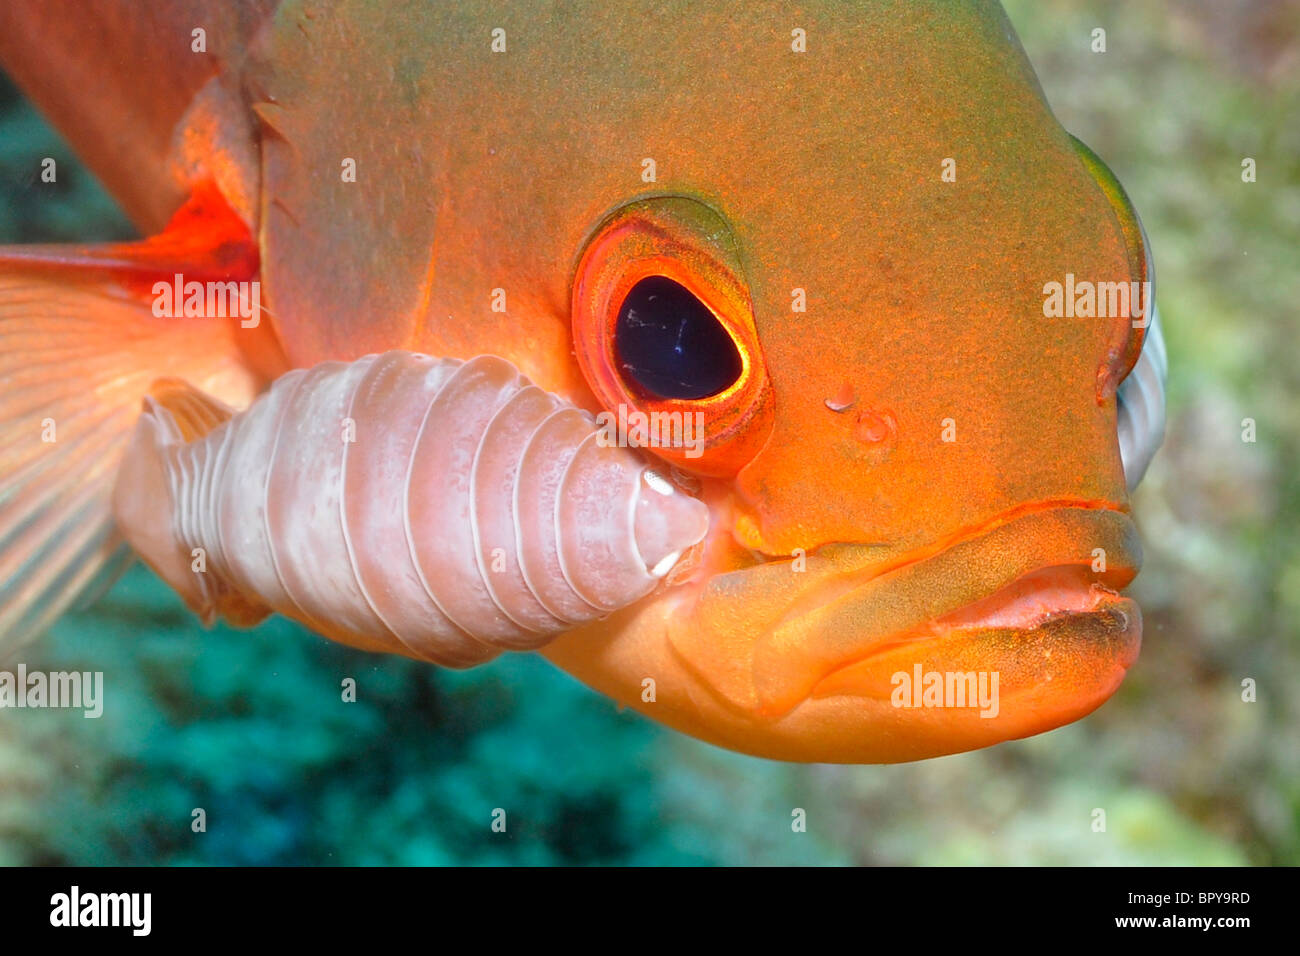 Il creolo-pesci ( Paranthias furcifer) Bonaire. Questa specie di pesci è altamente suseptible a isopod parassitismo. Sebbene il isopodi Foto Stock